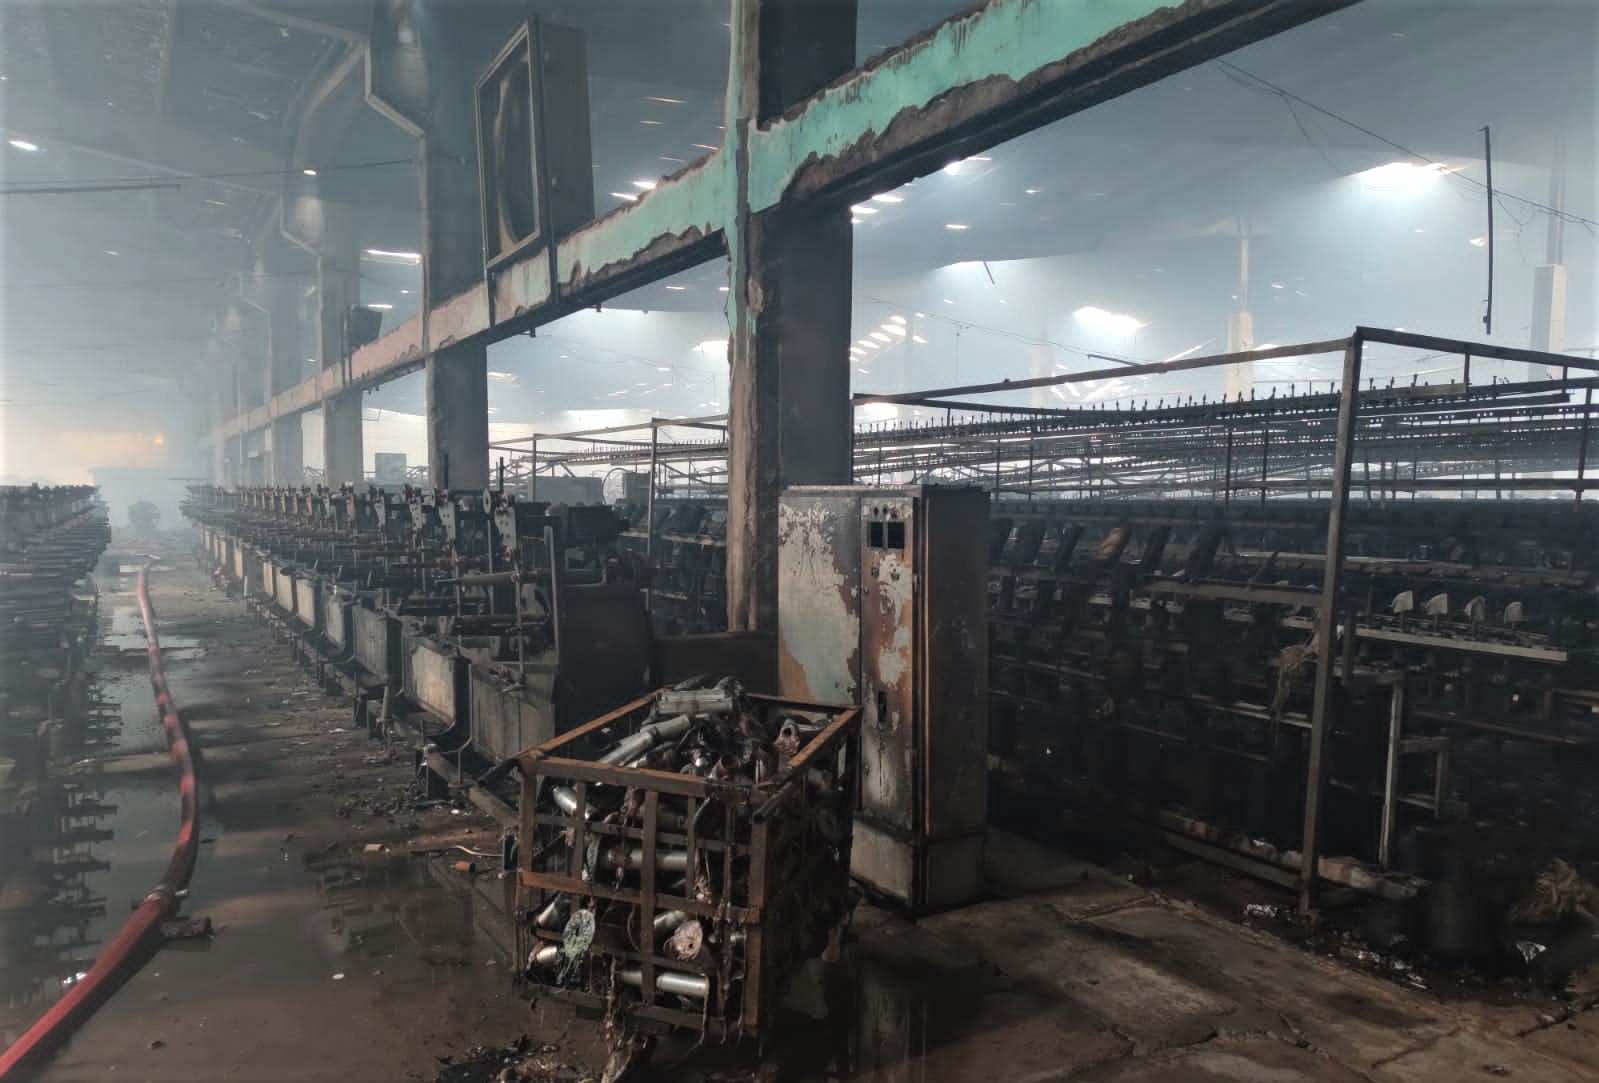 Fire under control at Rajbari Jute Mills